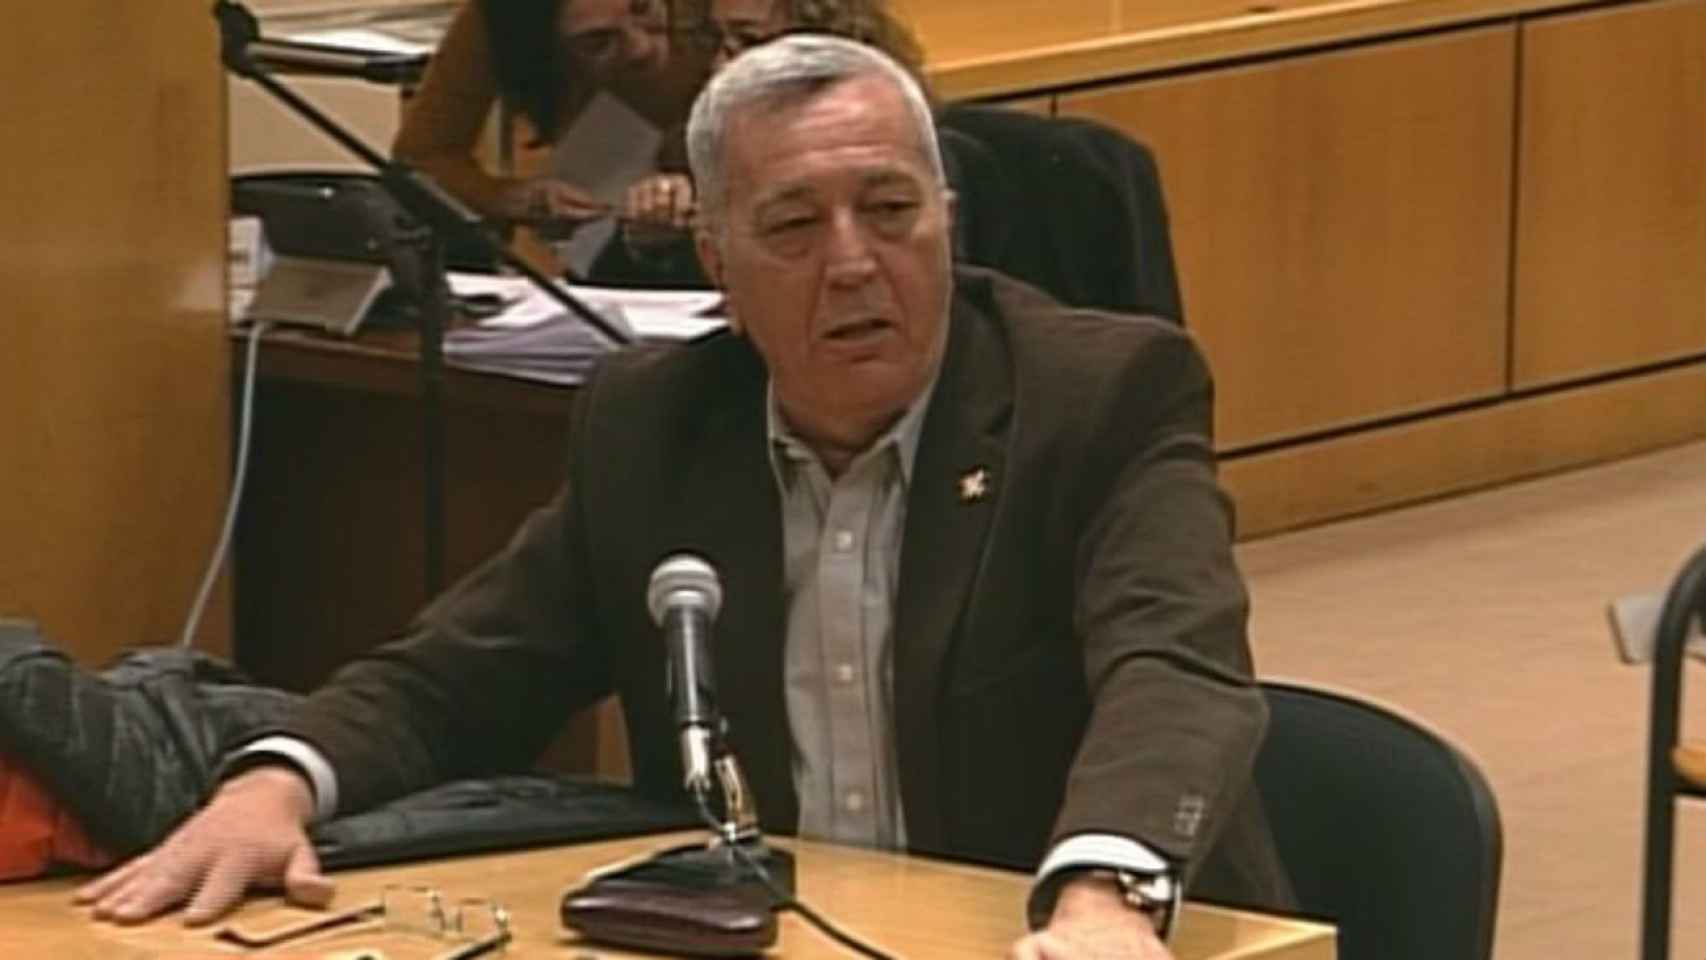 El excomisario Jaime Barrado, que estuvo al frente de la comisaría de Chamartín y señaló a Villarejo